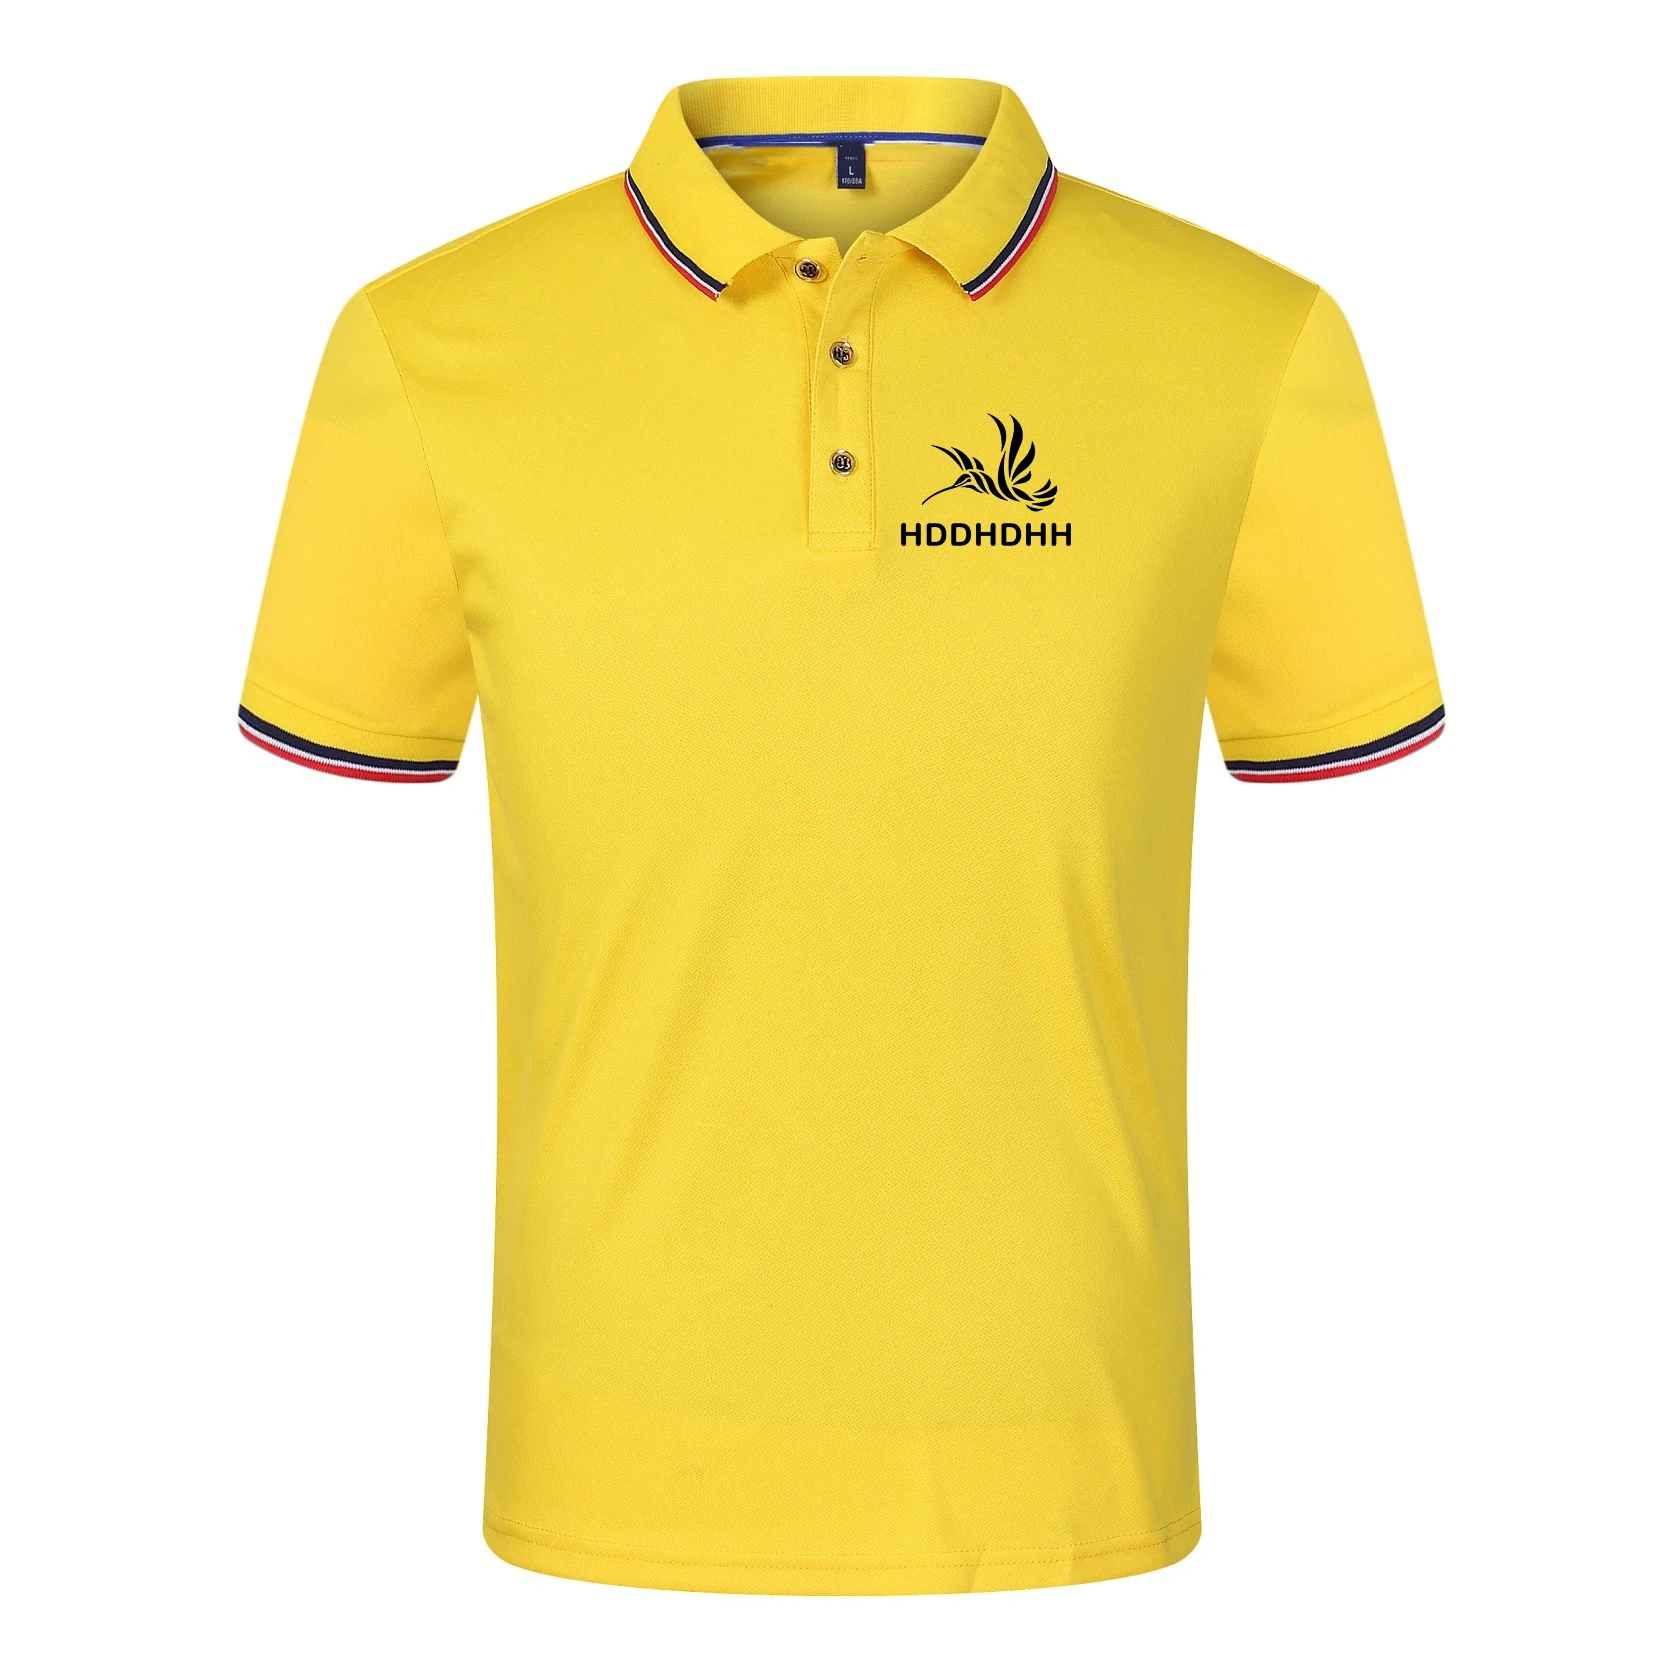 Letnia koszulka Polo z nadrukiem marki hddhhh z krótkim rękawem męska koszulka biznes na co dzień luźna prosta stylowy Top